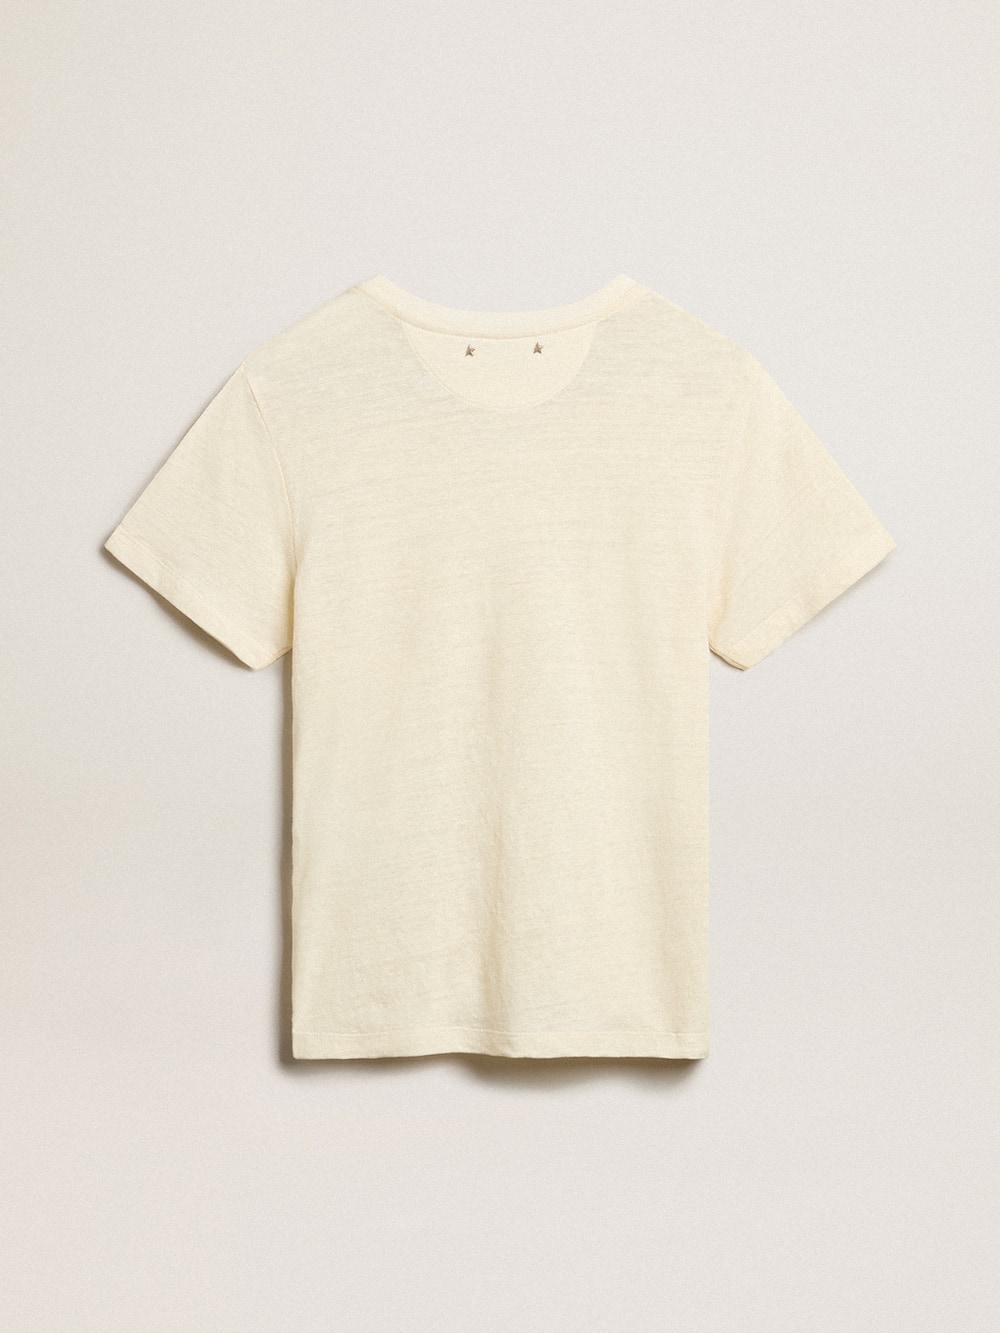 Golden Goose - T-Shirt da donna in cotone color bianco vissuto e con tasca ricamata in 